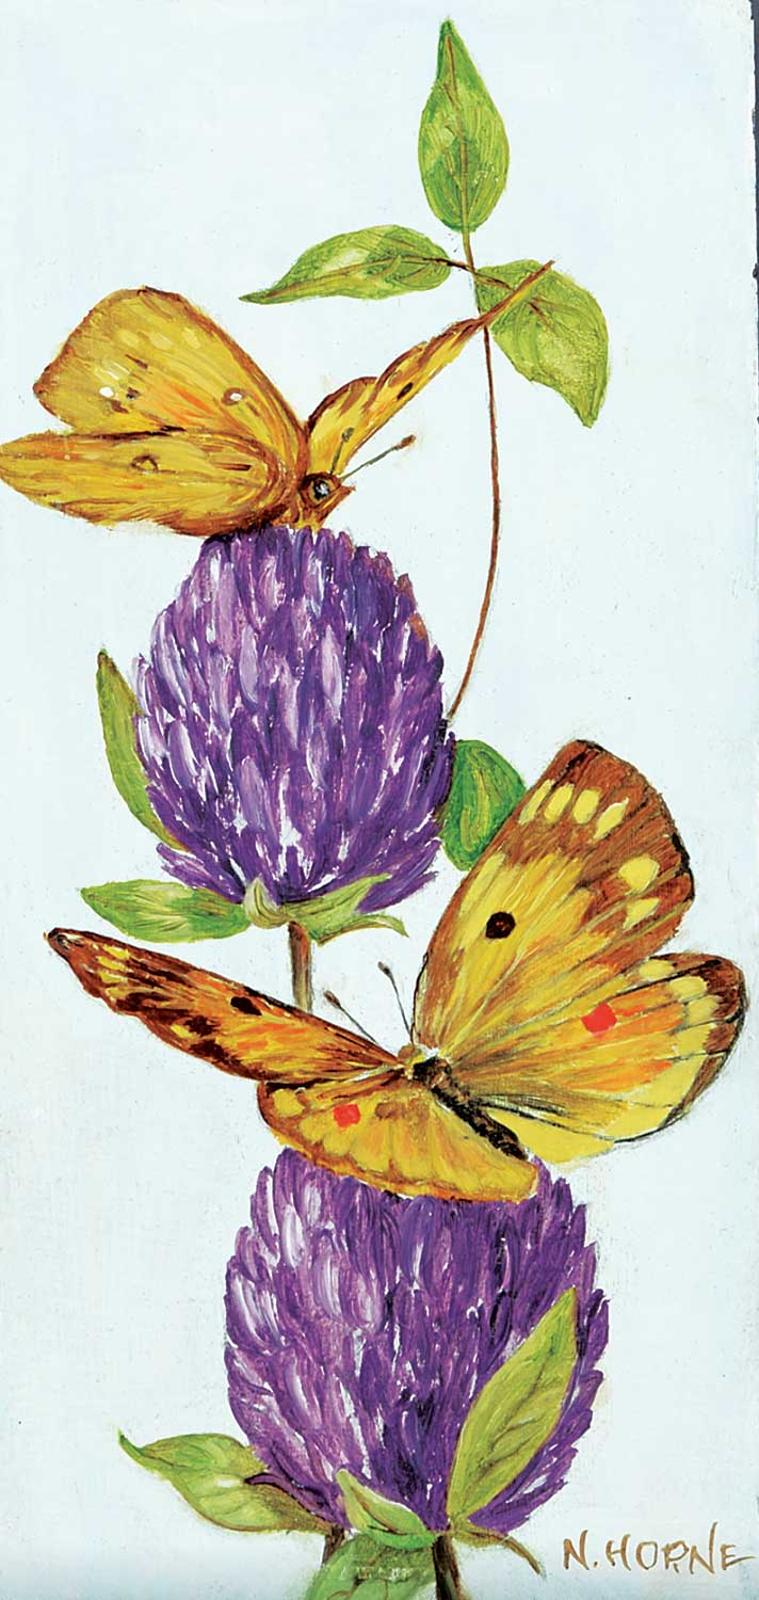 N. Horne - Alfalfa Butterfly